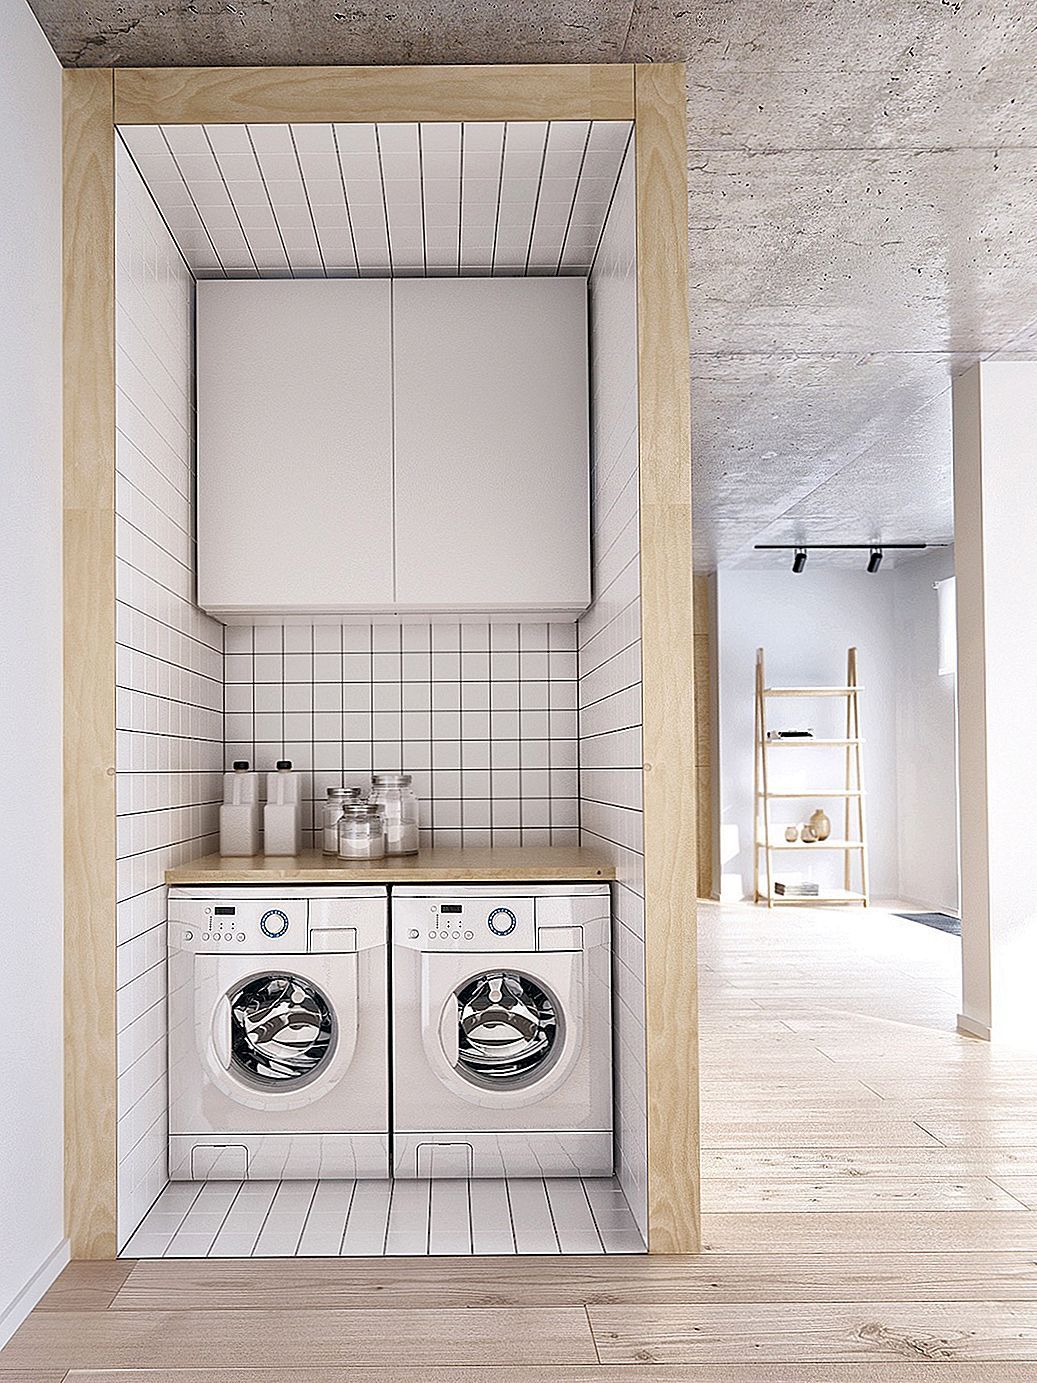 20 υπερσύγχρονα δωμάτια για πλυντήρια που ταιριάζουν στα πιο σύγχρονα σπίτια